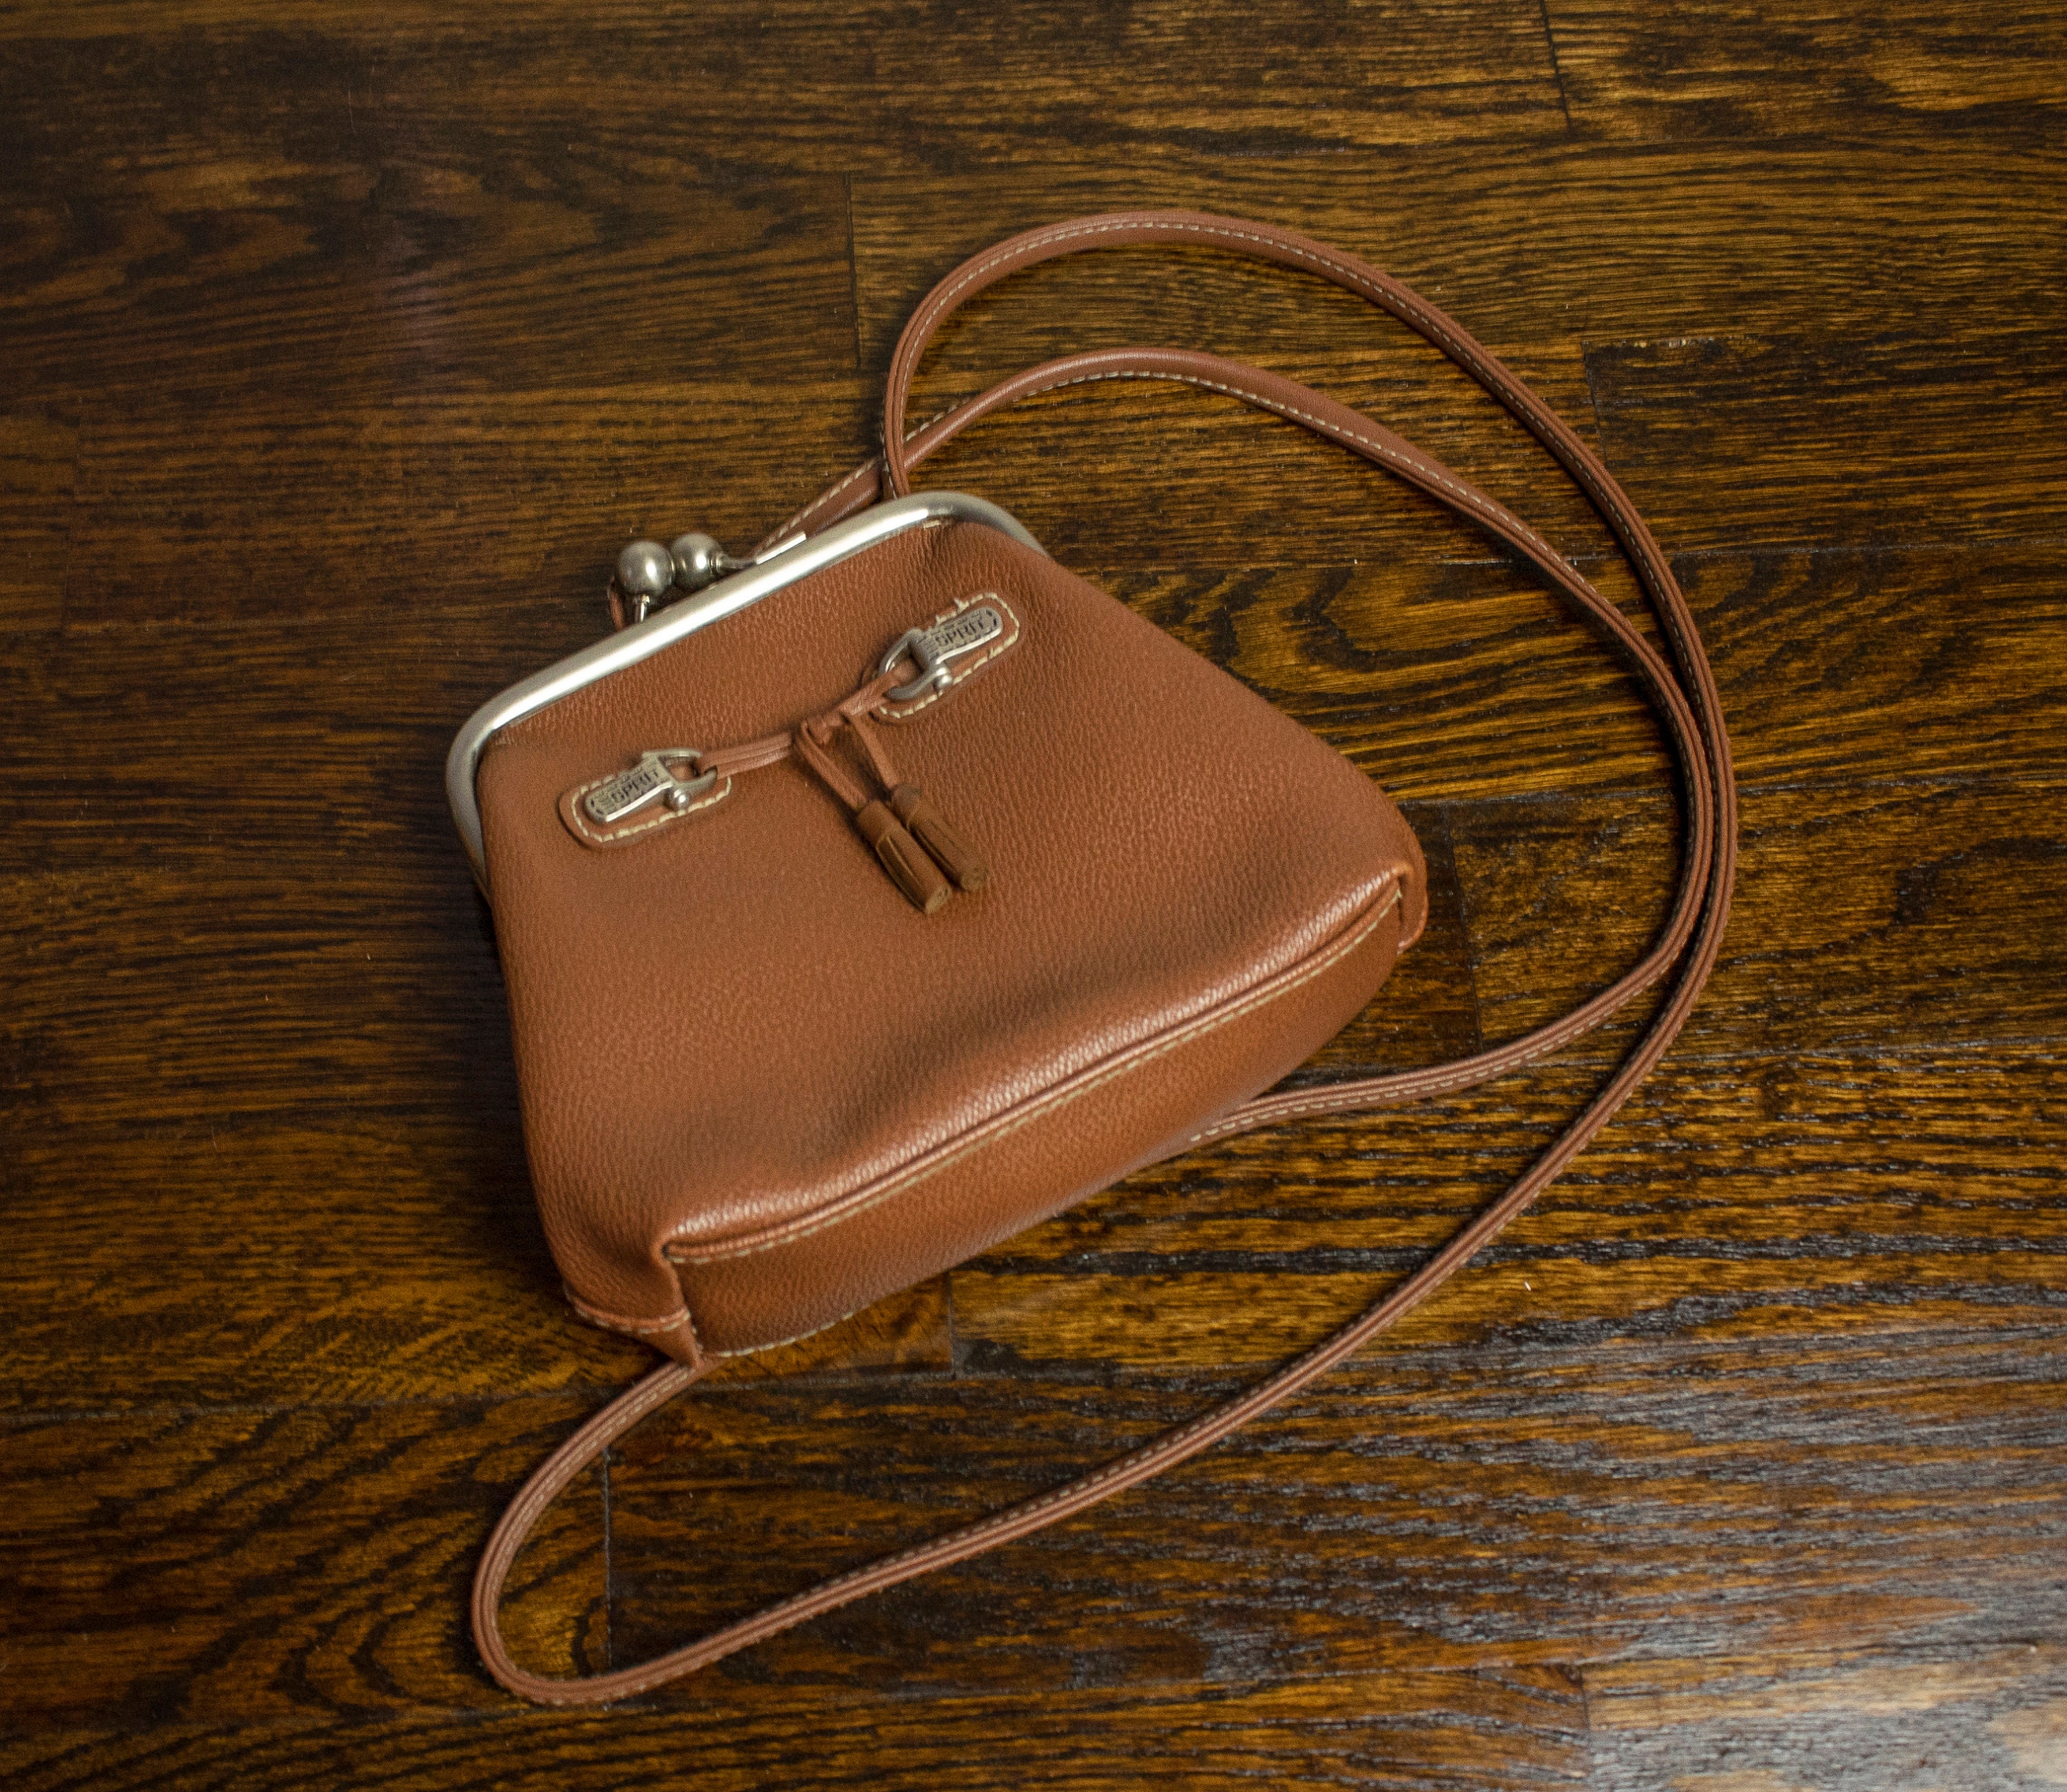 Vintage ESPRIT Crossbody Bag Black Brown Faux Leather – Shop